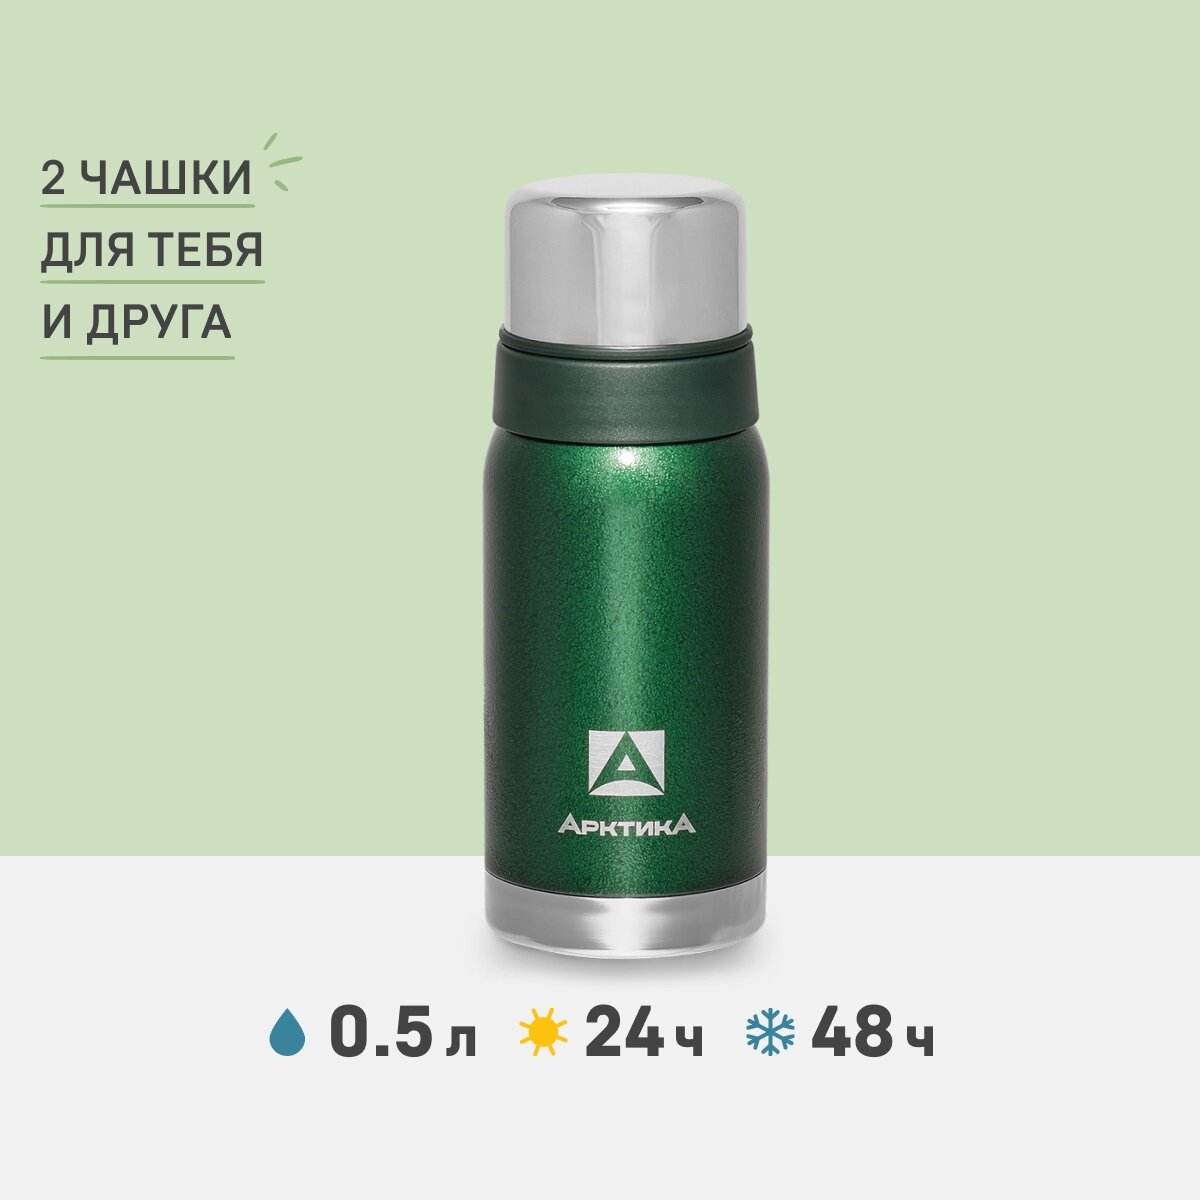 Термос для чая и кофе Арктика 106-500 зеленый 0,5 литров с двумя чашками в комплекте